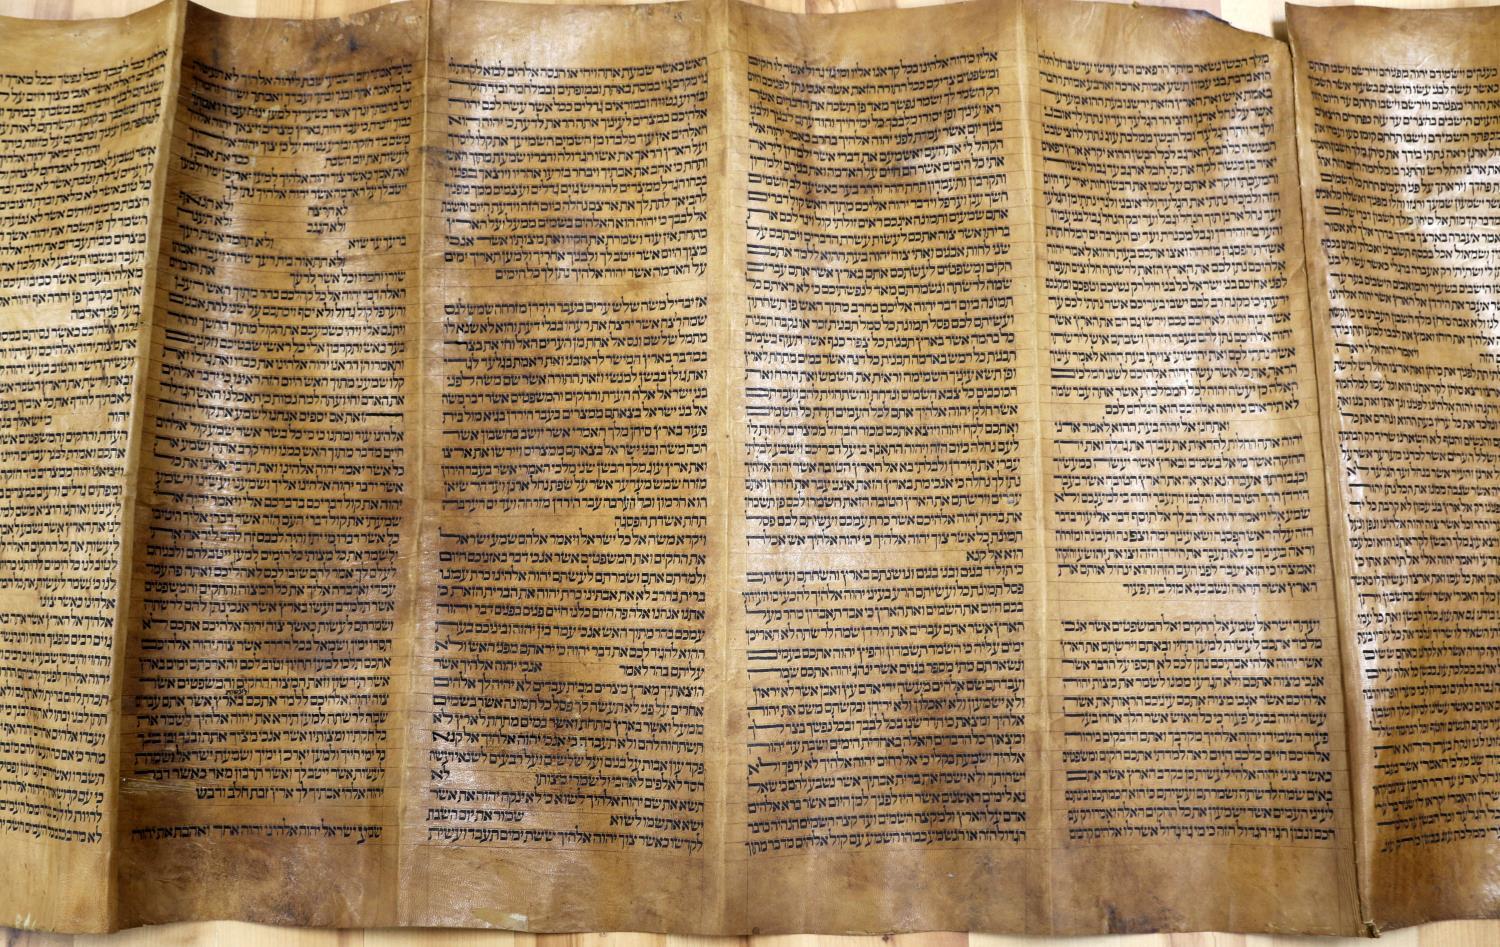 Torah scroll (Yemenite) - Wikipedia